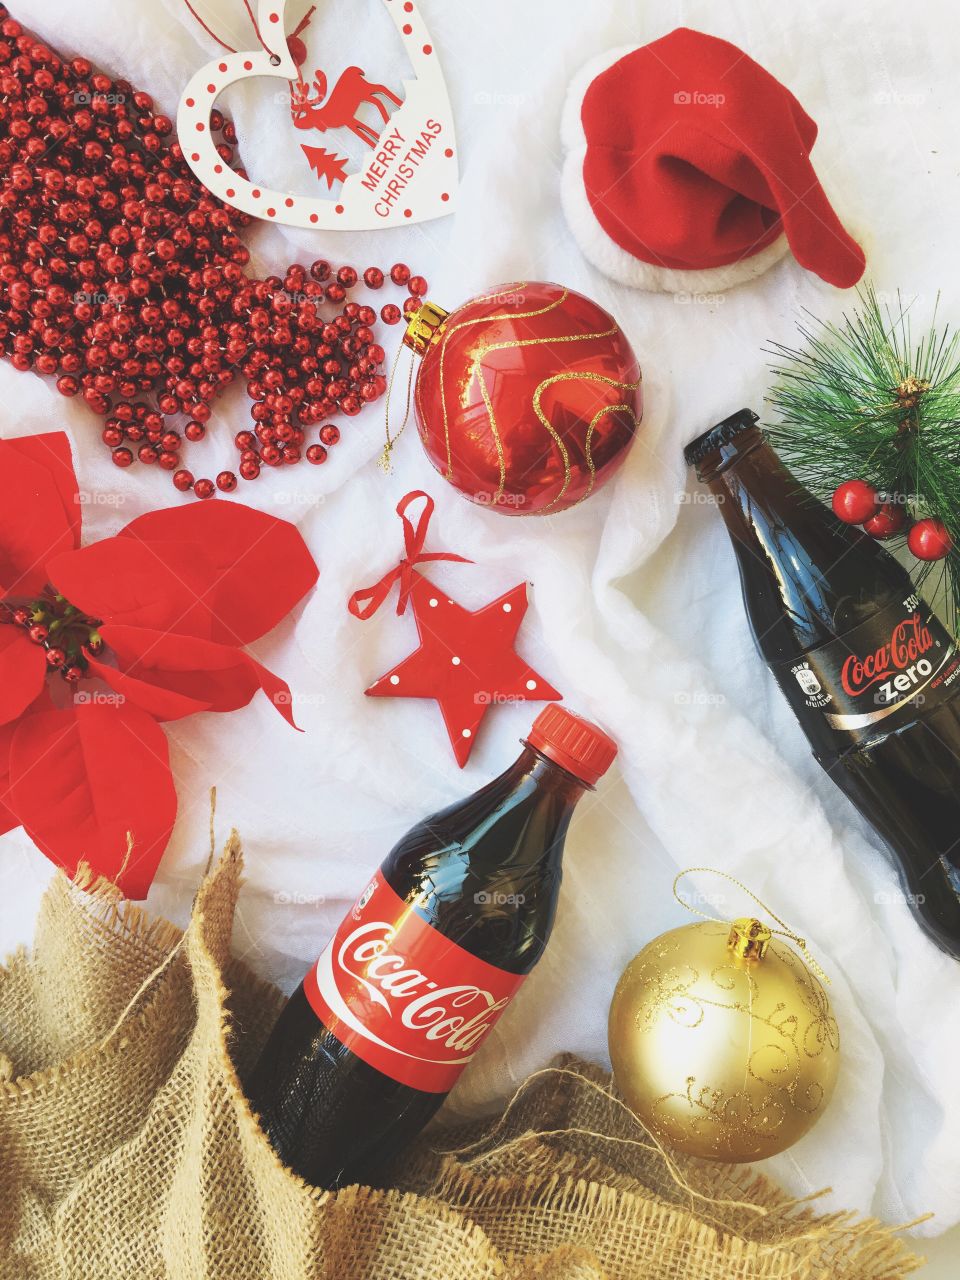 Christmas and Coke